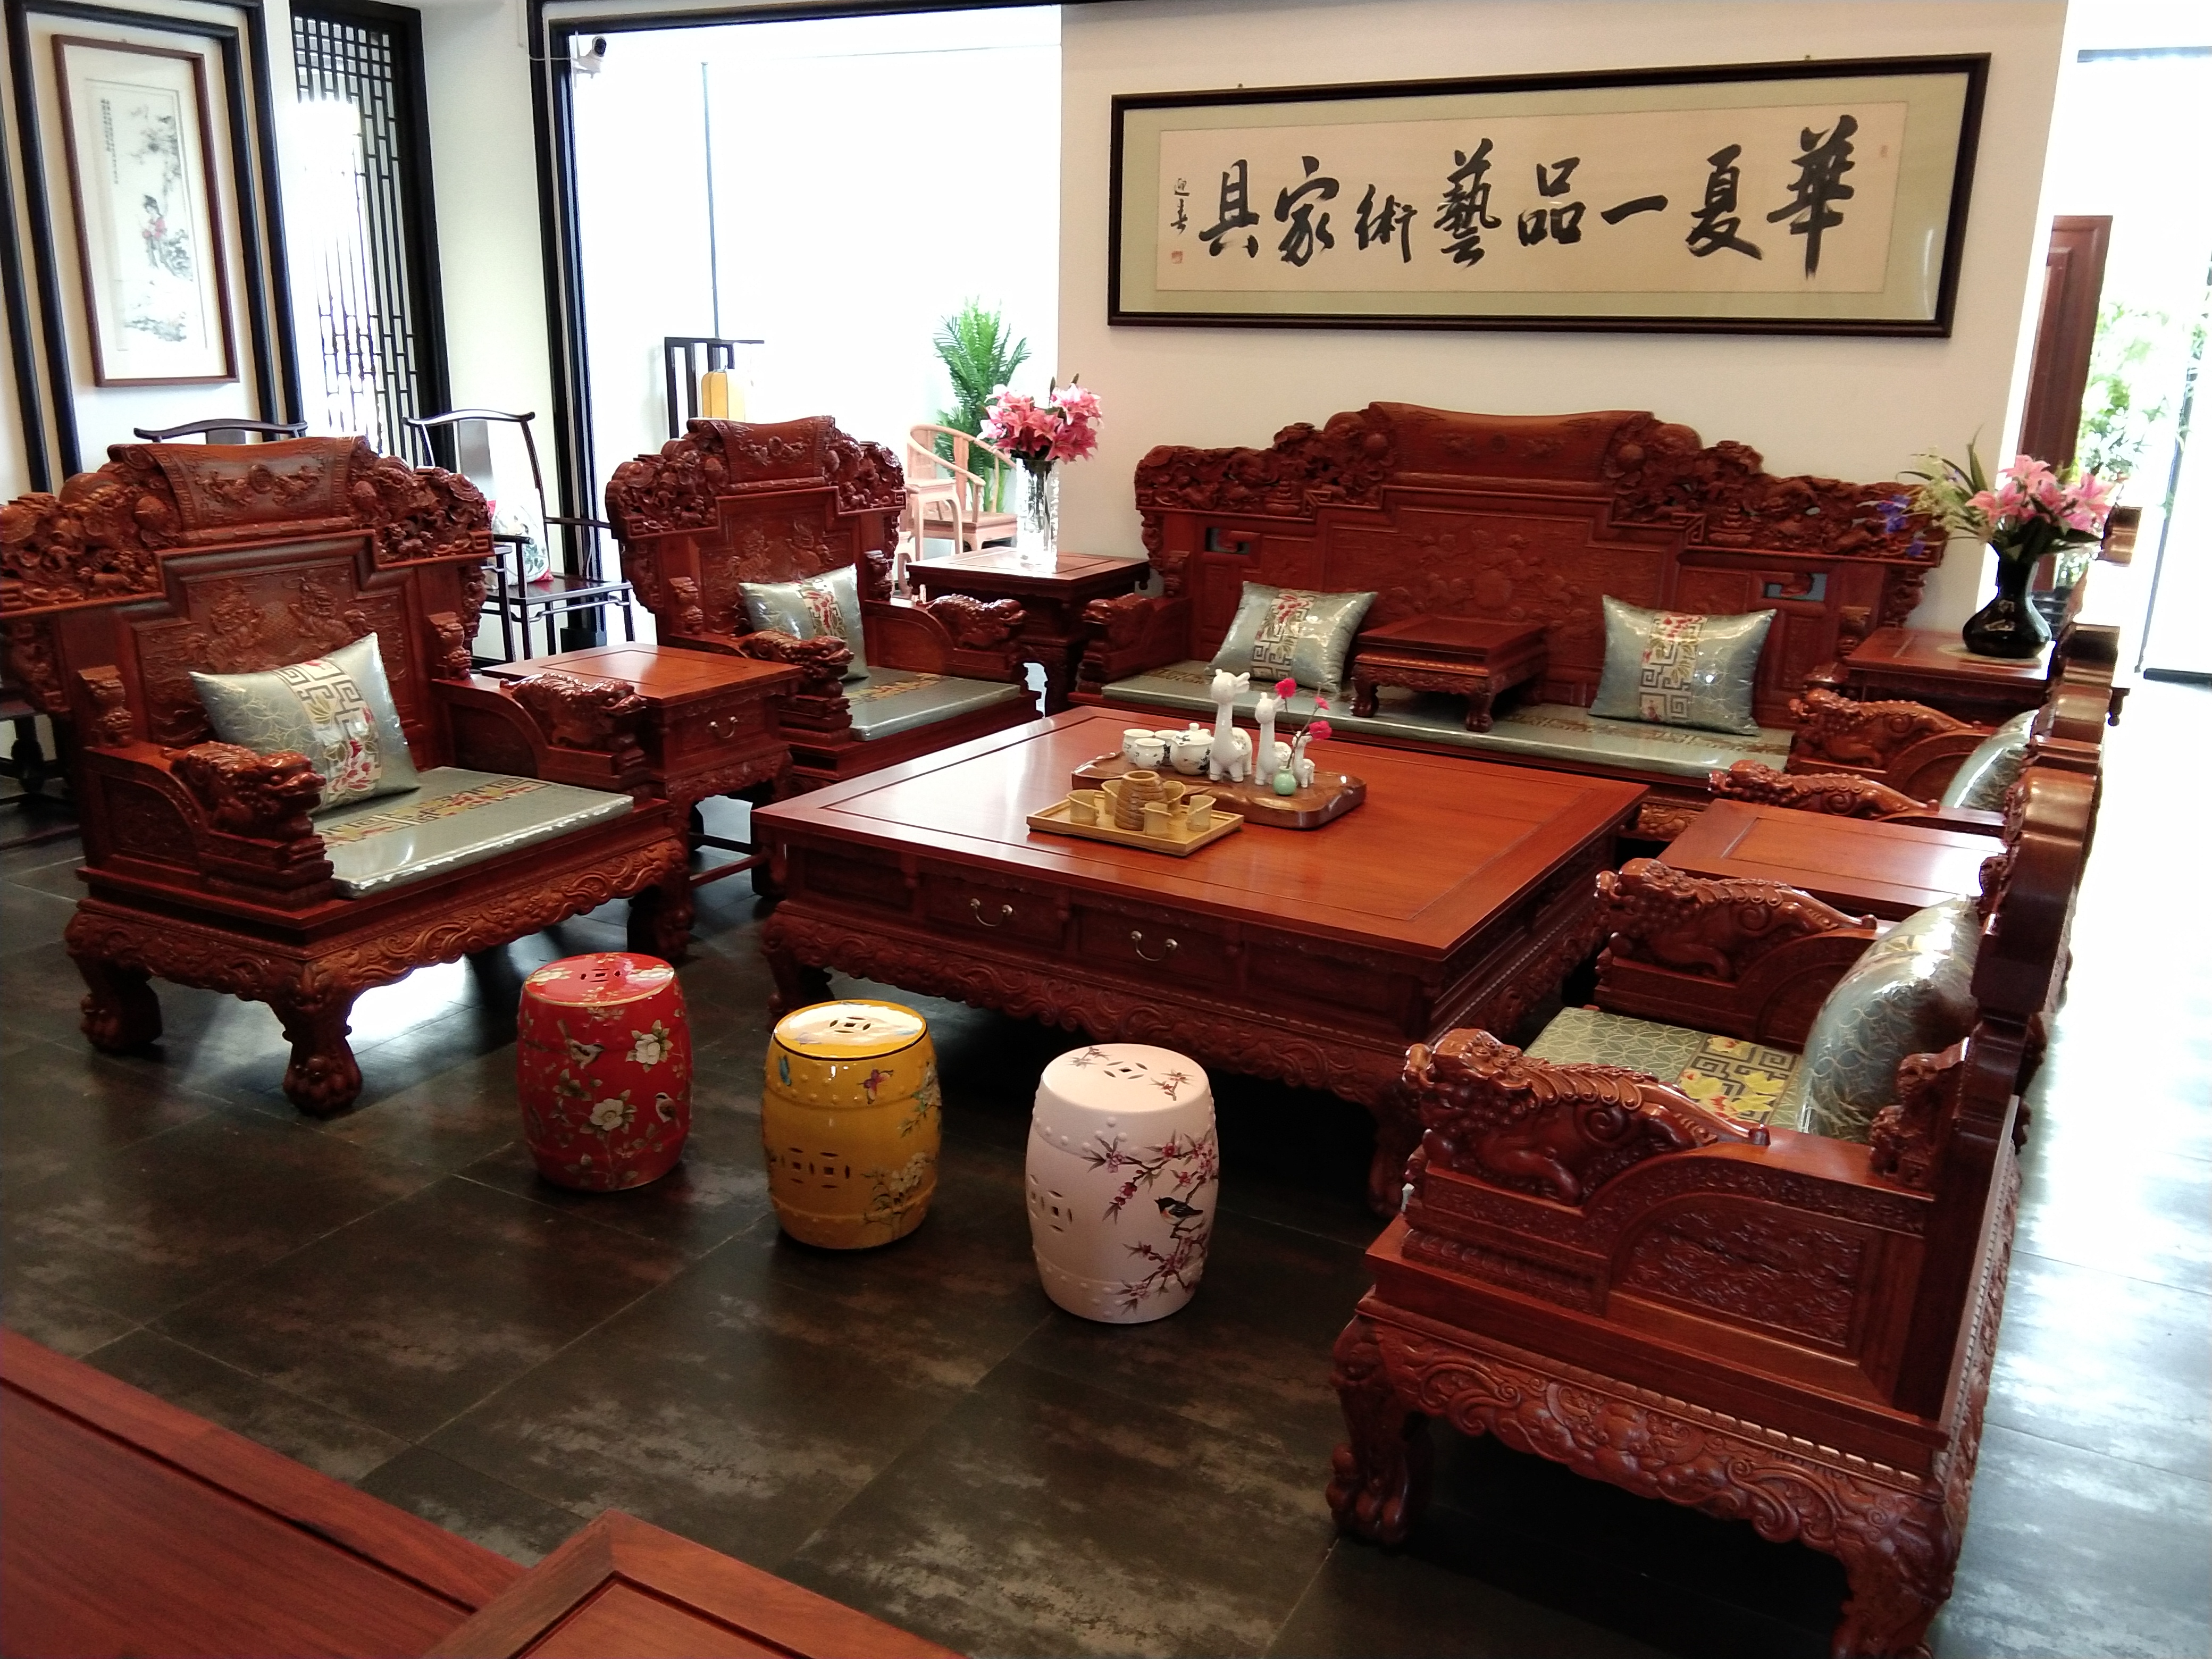 红木家具的制作工艺起源于中国传统建筑工艺,尤其是建筑中的榫卯拼接